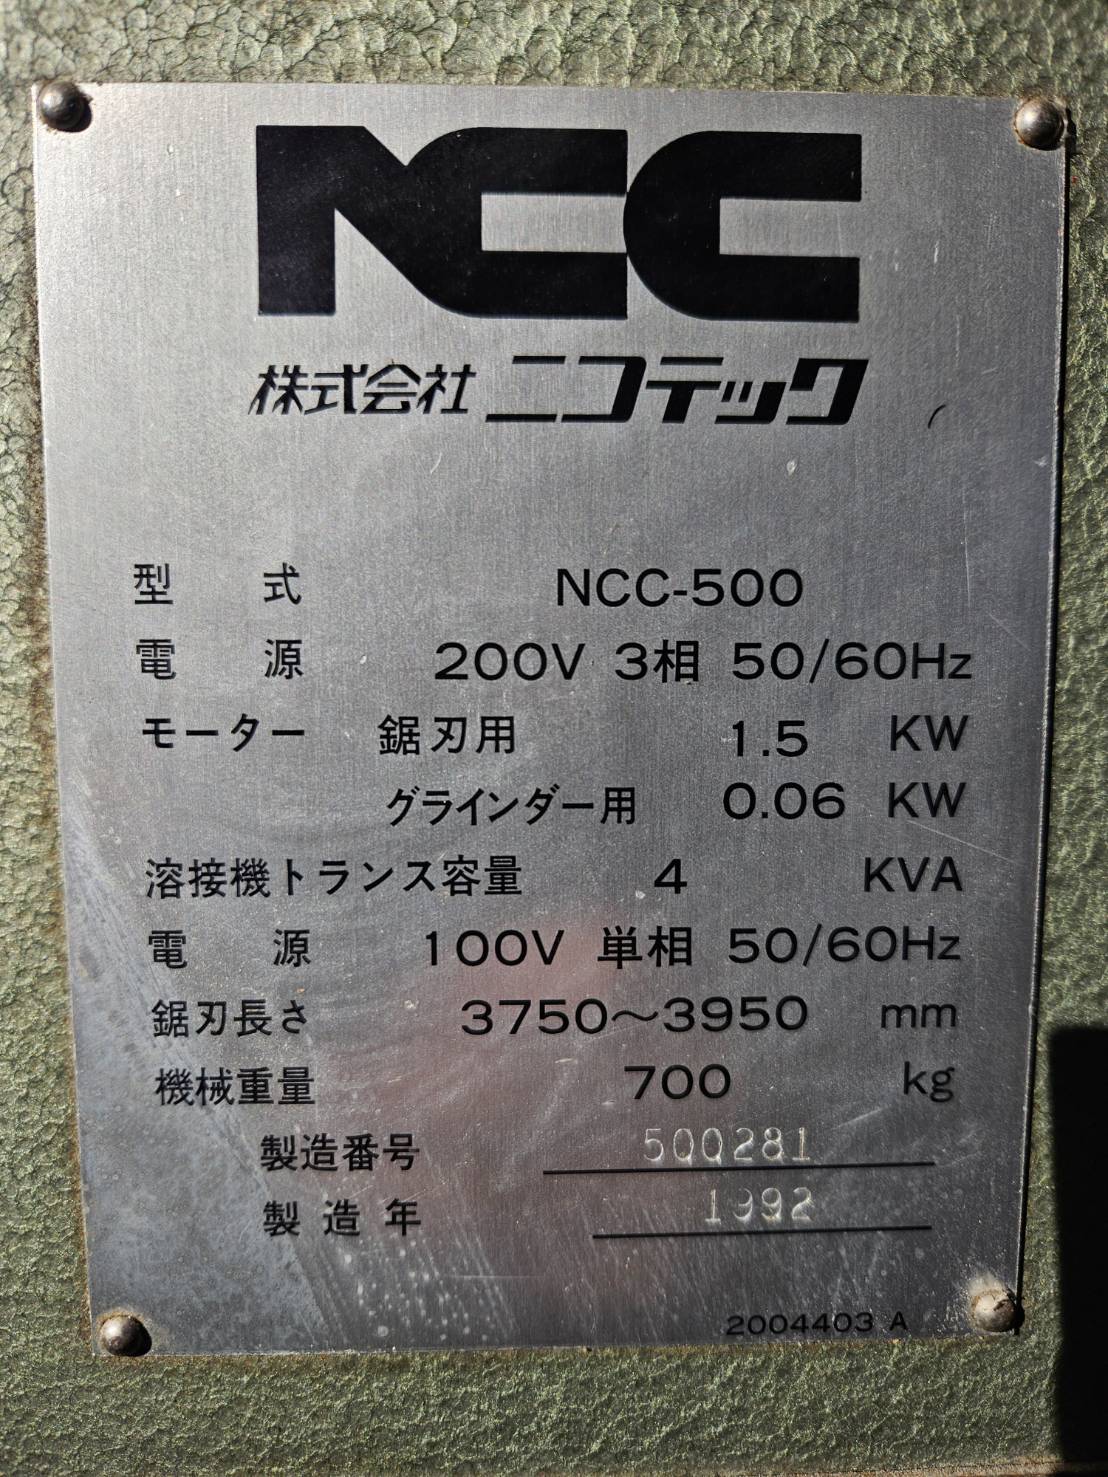 中古コンターマシン NCC-500 ニコテック